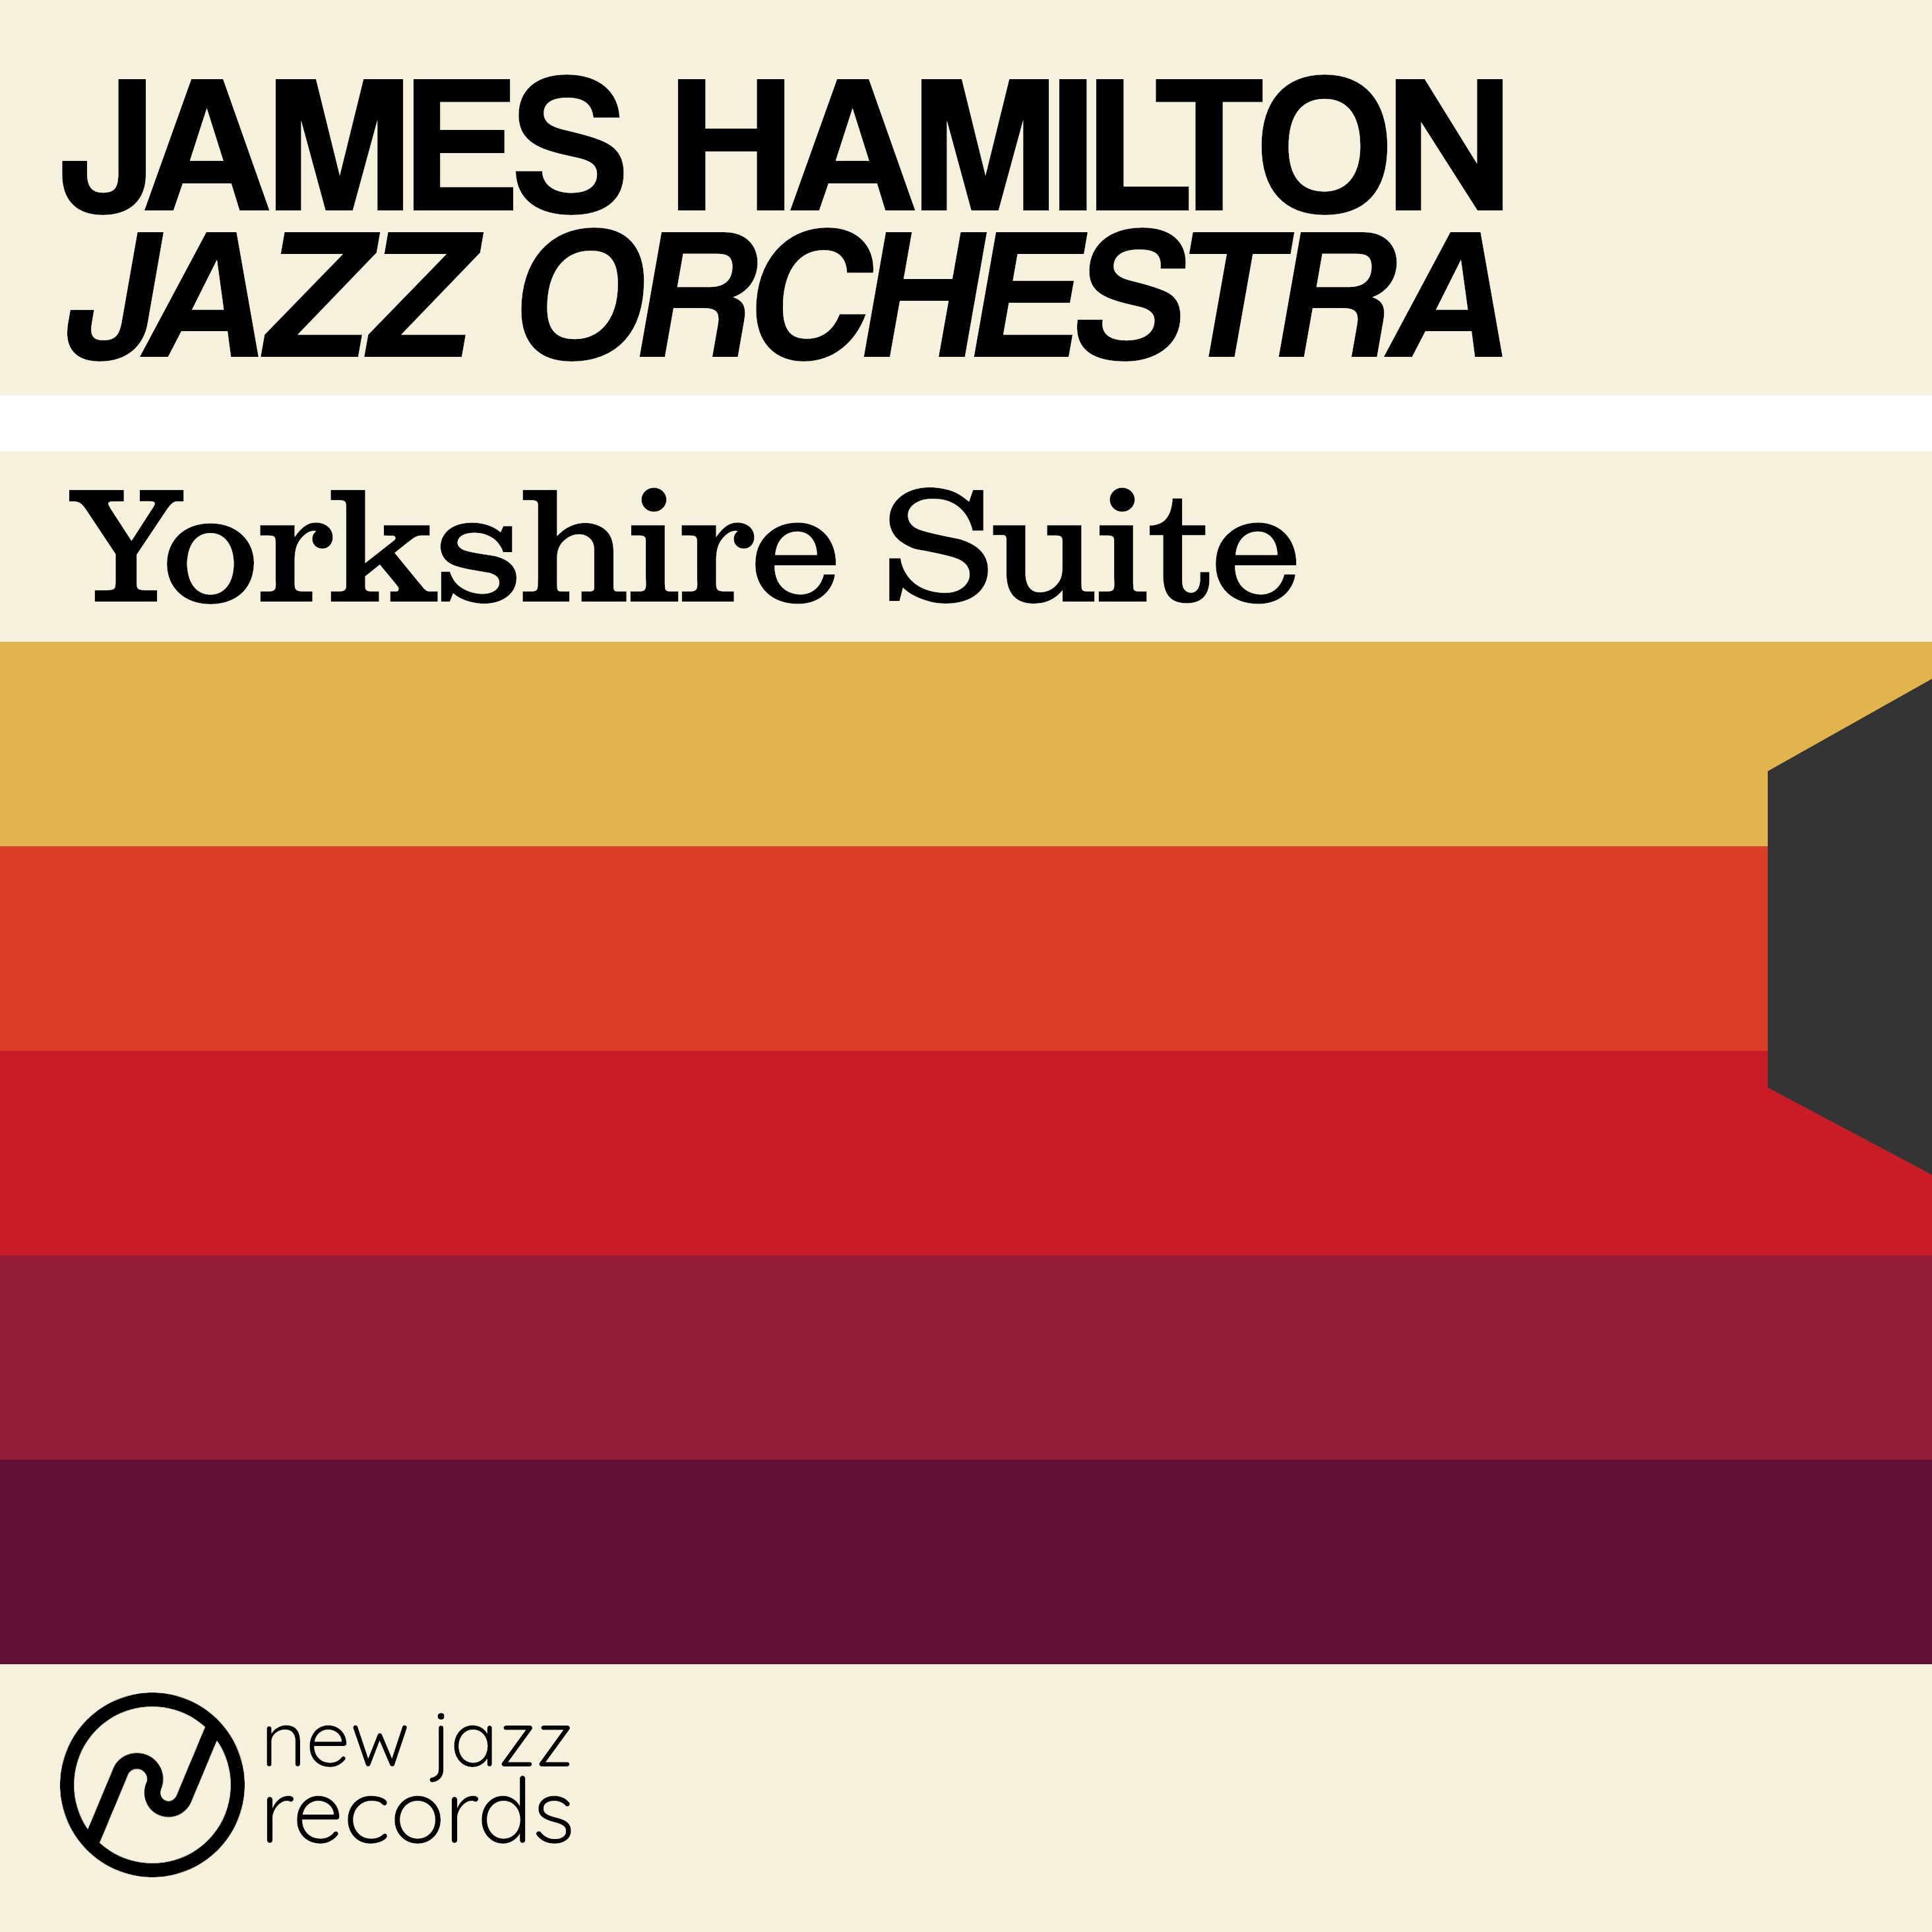 James Hamilton Jazz Orchestra – Yorkshire Suite (2020) [FLAC 24bit/48kHz]